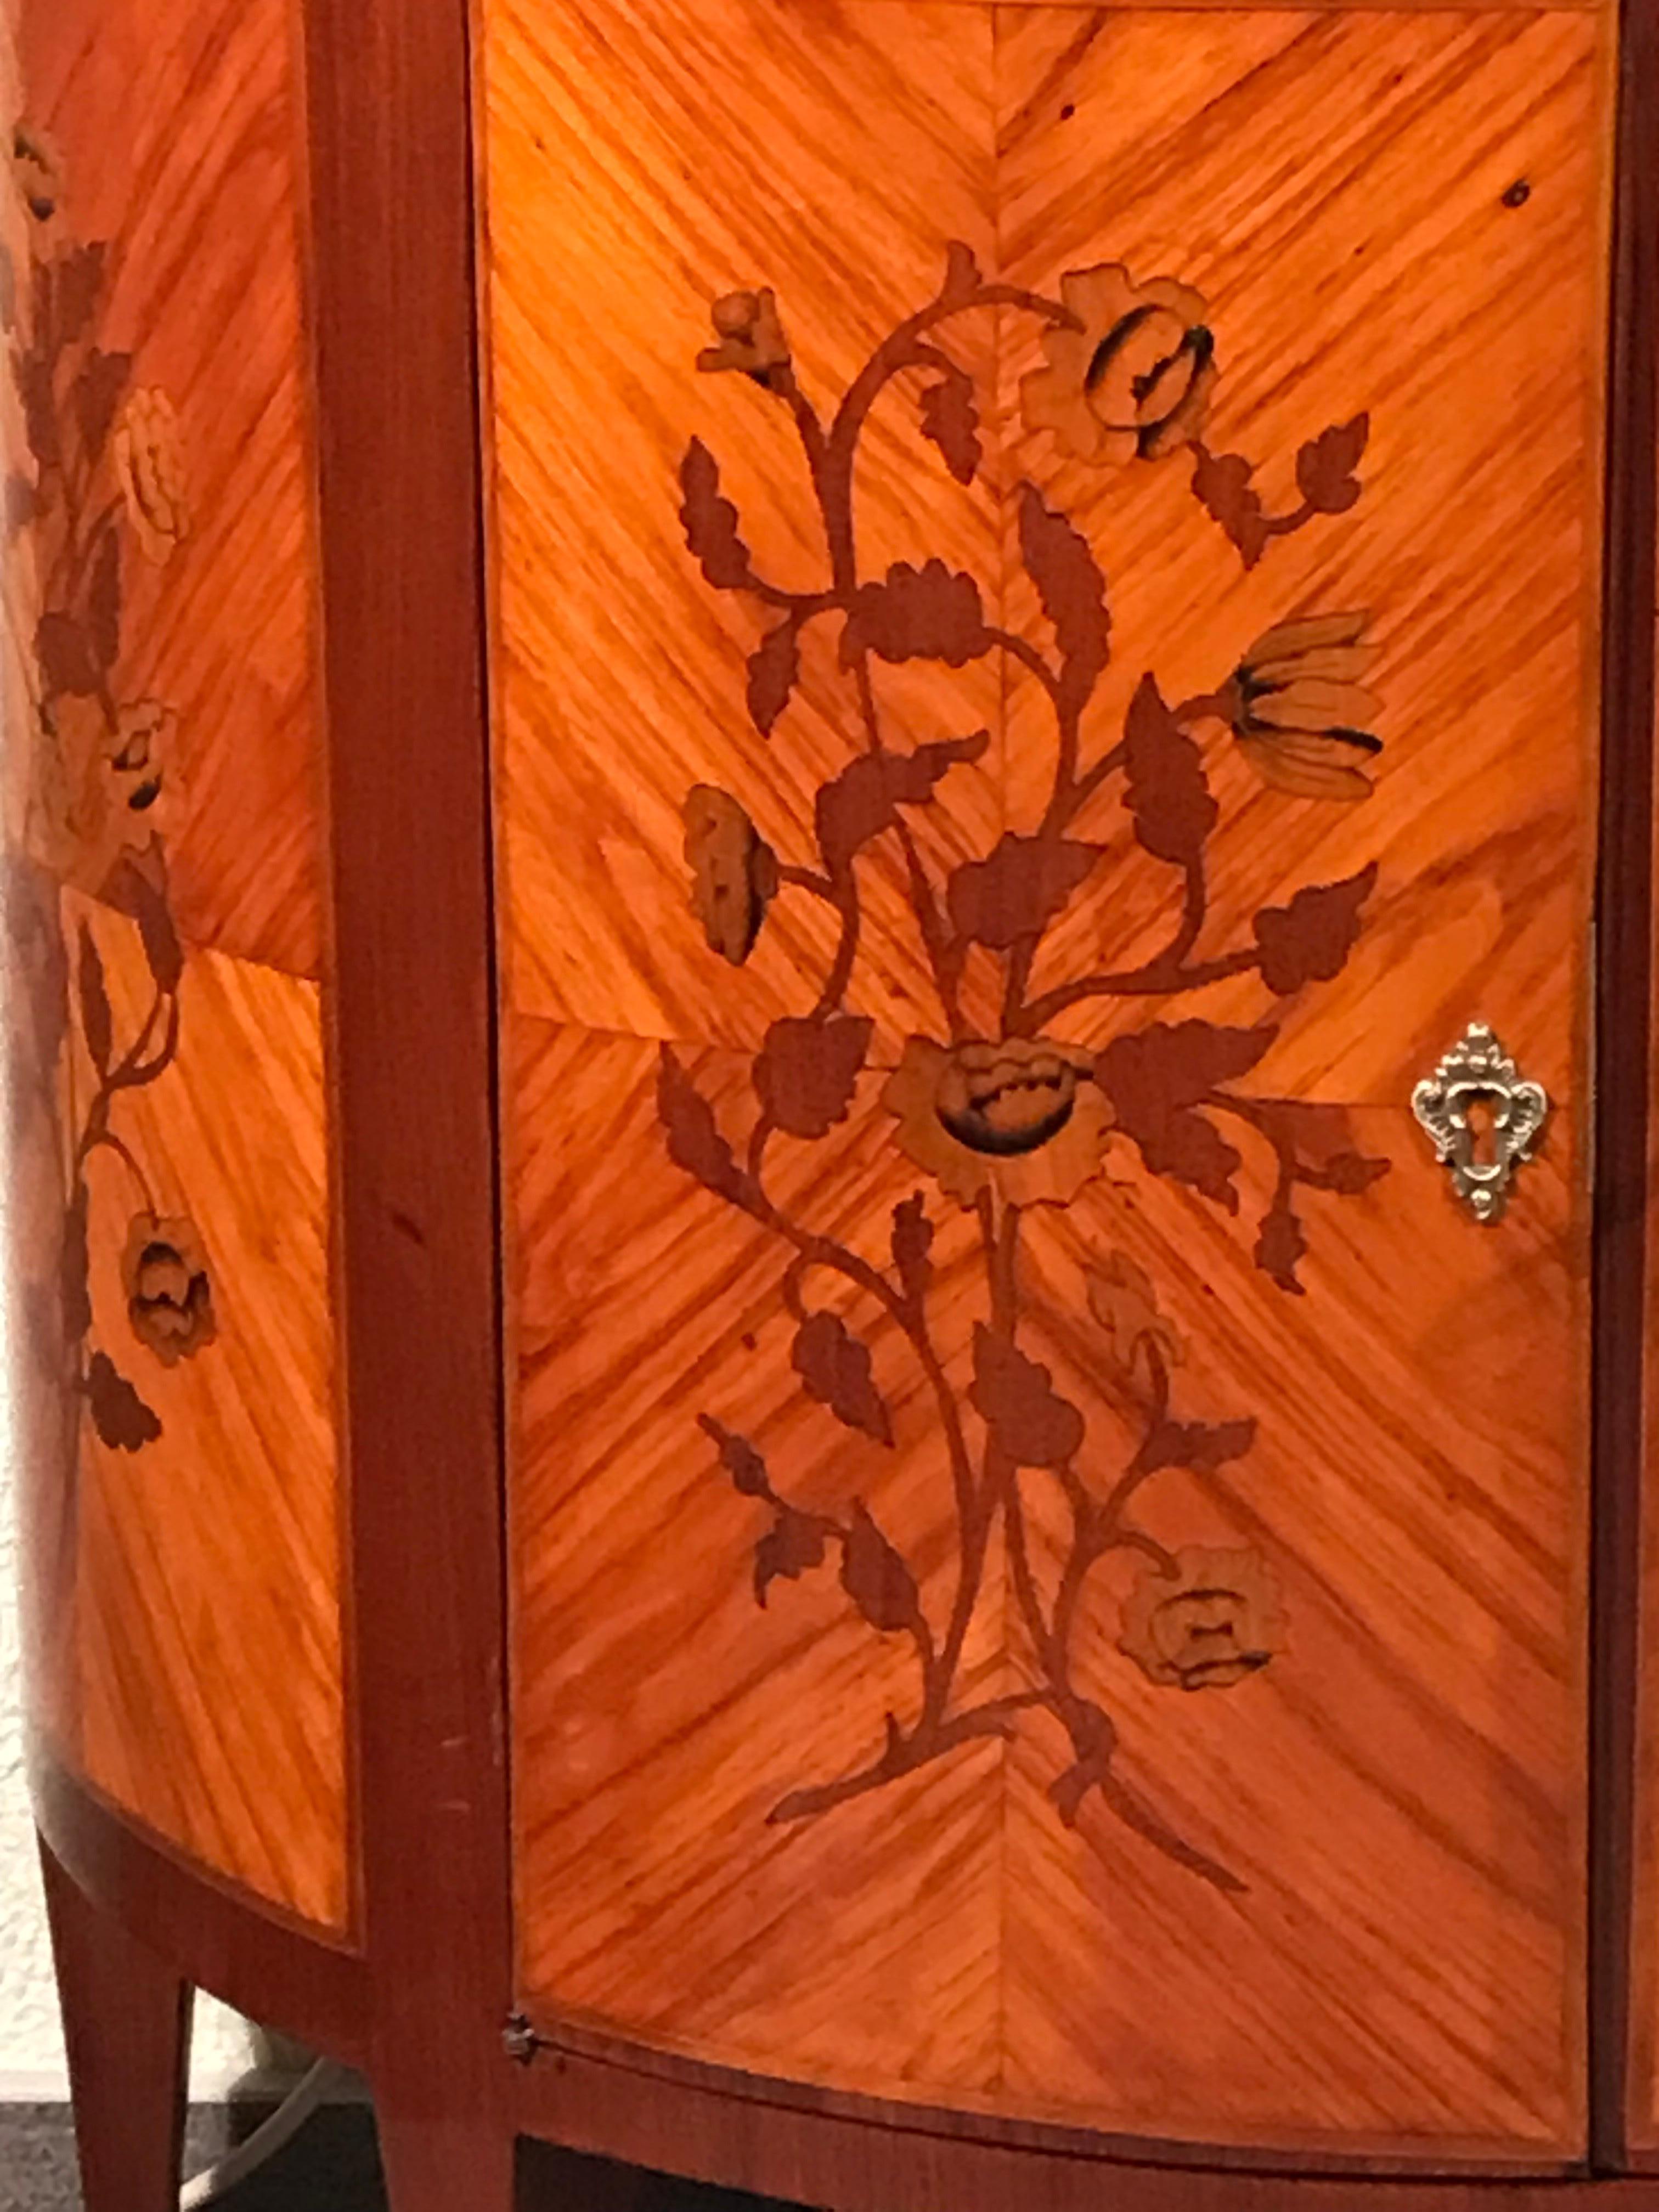 Dieser Napoleon III Demi Lune Schrank ist von exquisiter Qualität. 
Der halbmondförmige Schrank hat zwei Türen und eine zentrale Schublade. Es hat ein sehr hübsches Königsholzfurnier mit wunderschönen Blumeneinlegearbeiten an Türen und Seiten.